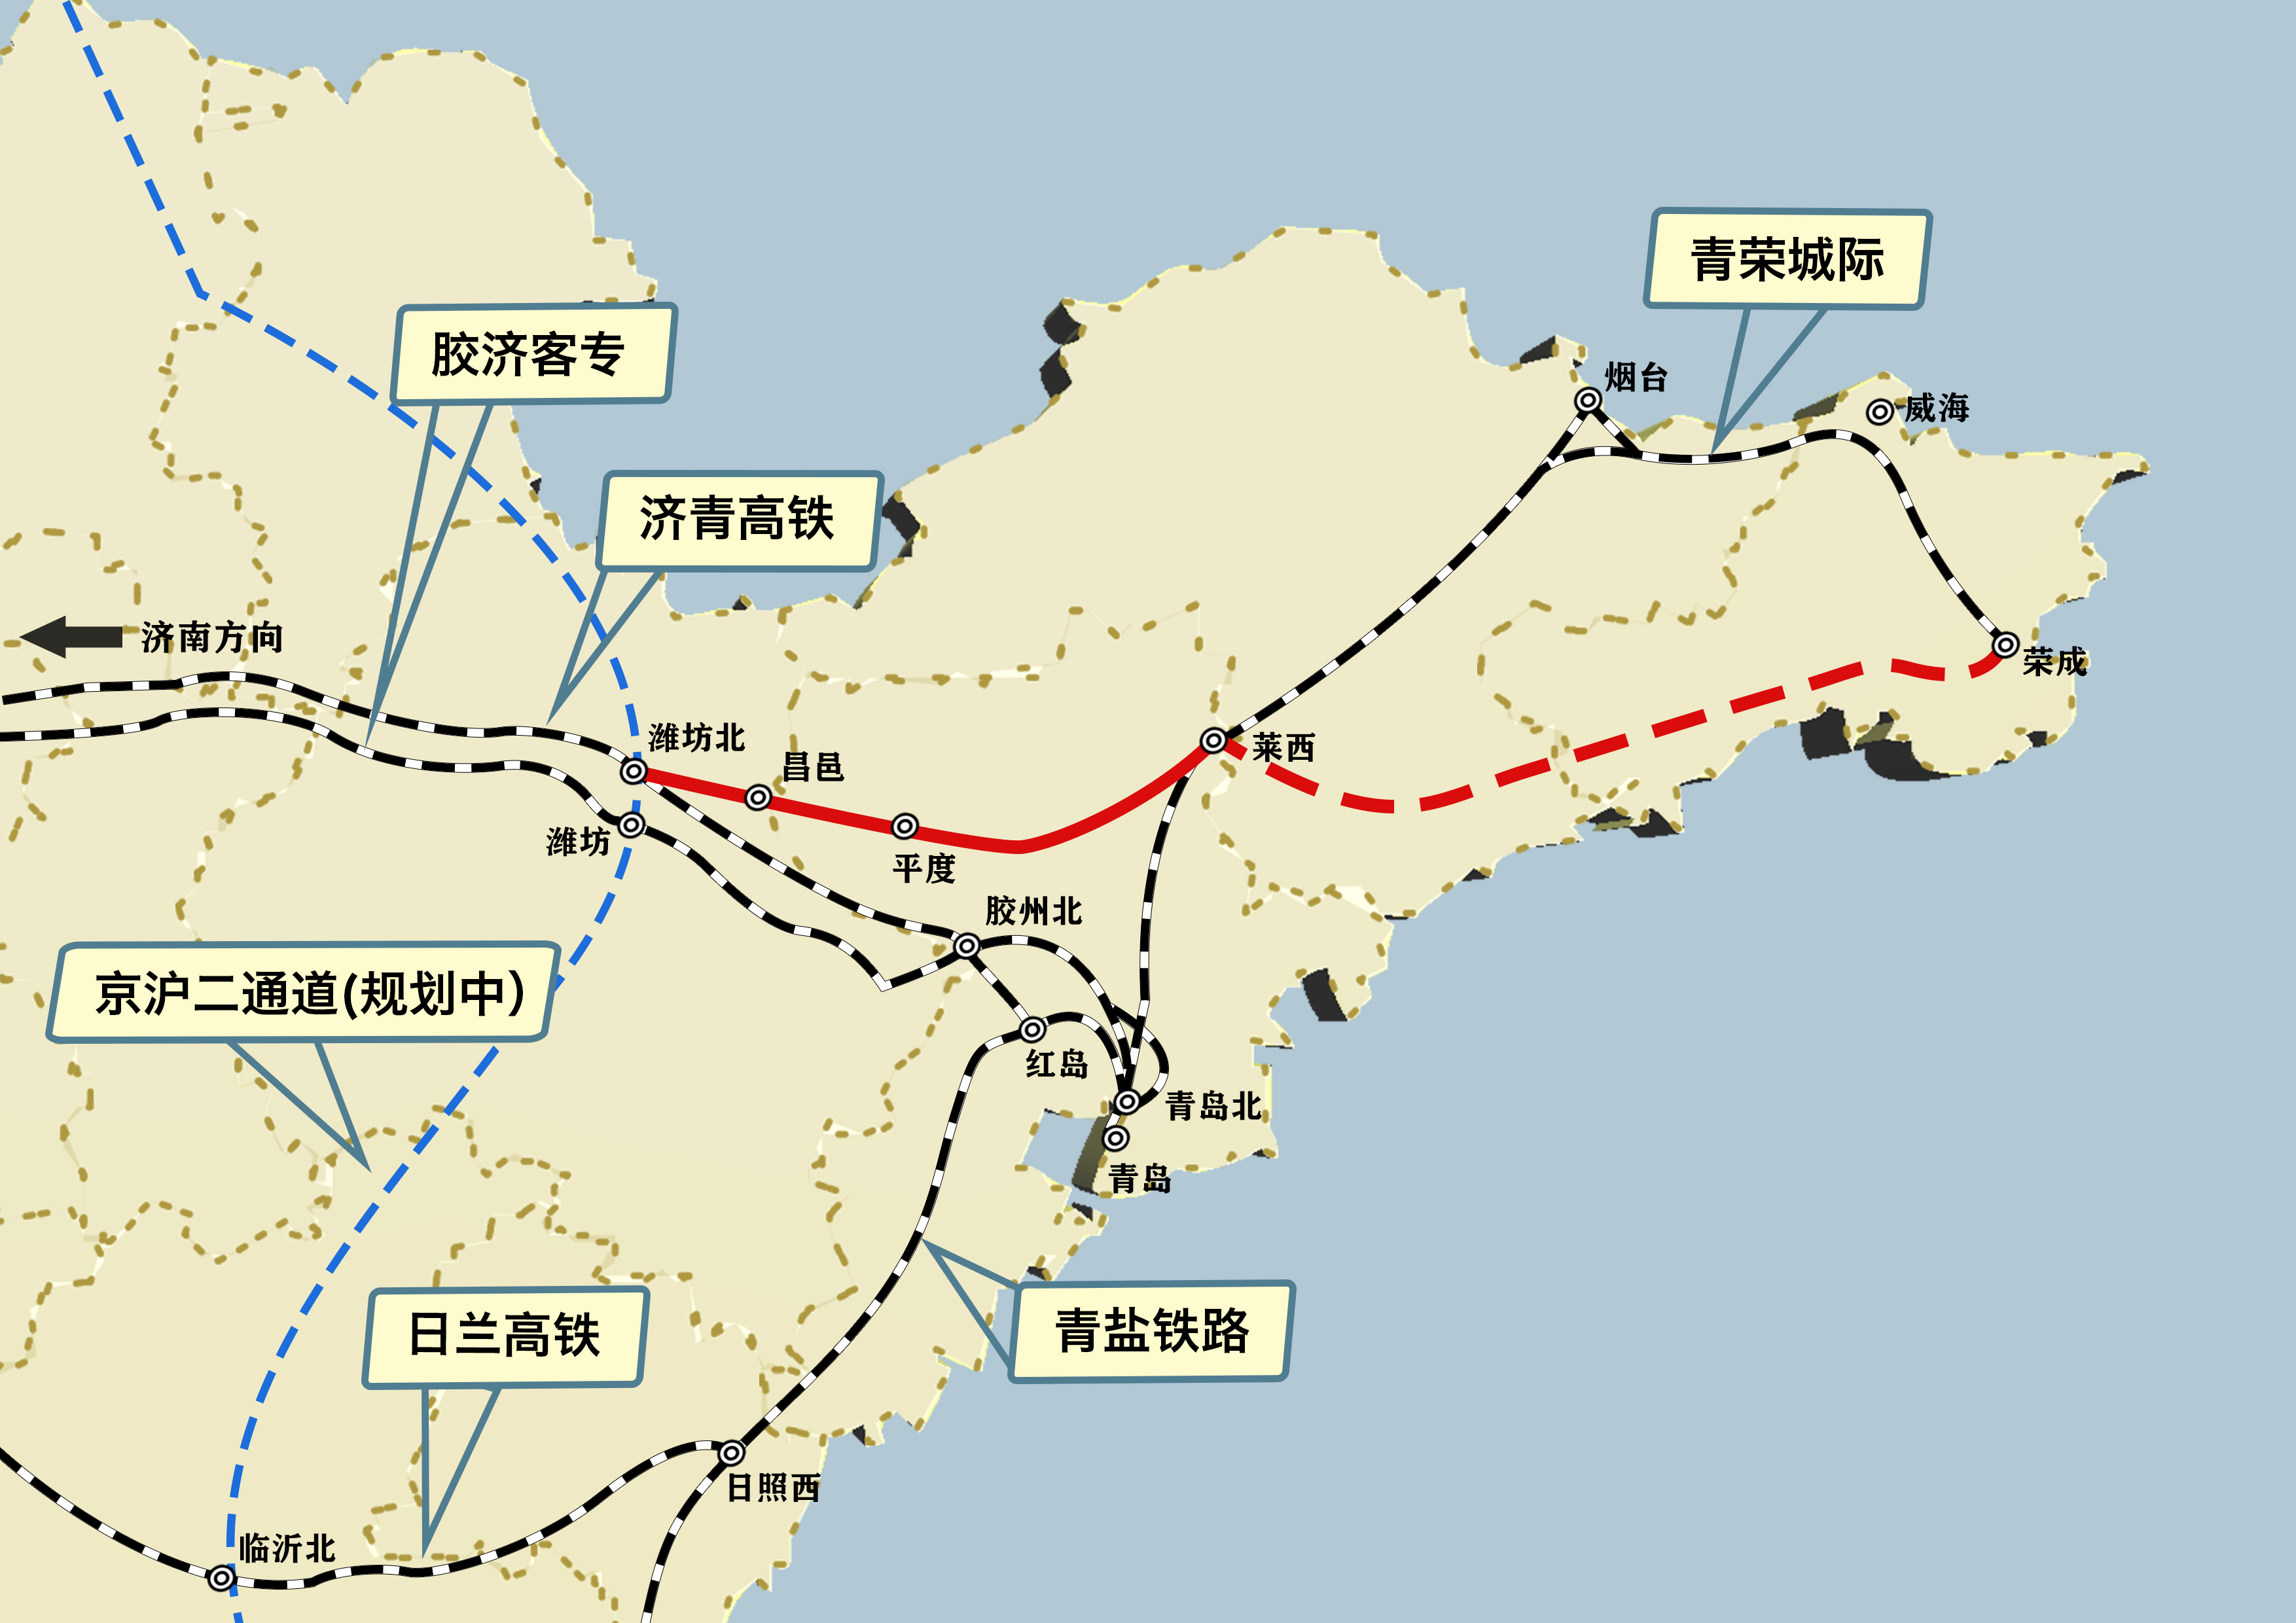 11月26日,潍荣高速铁路潍莱段开通运营(以下简称潍莱高铁),山东省面积